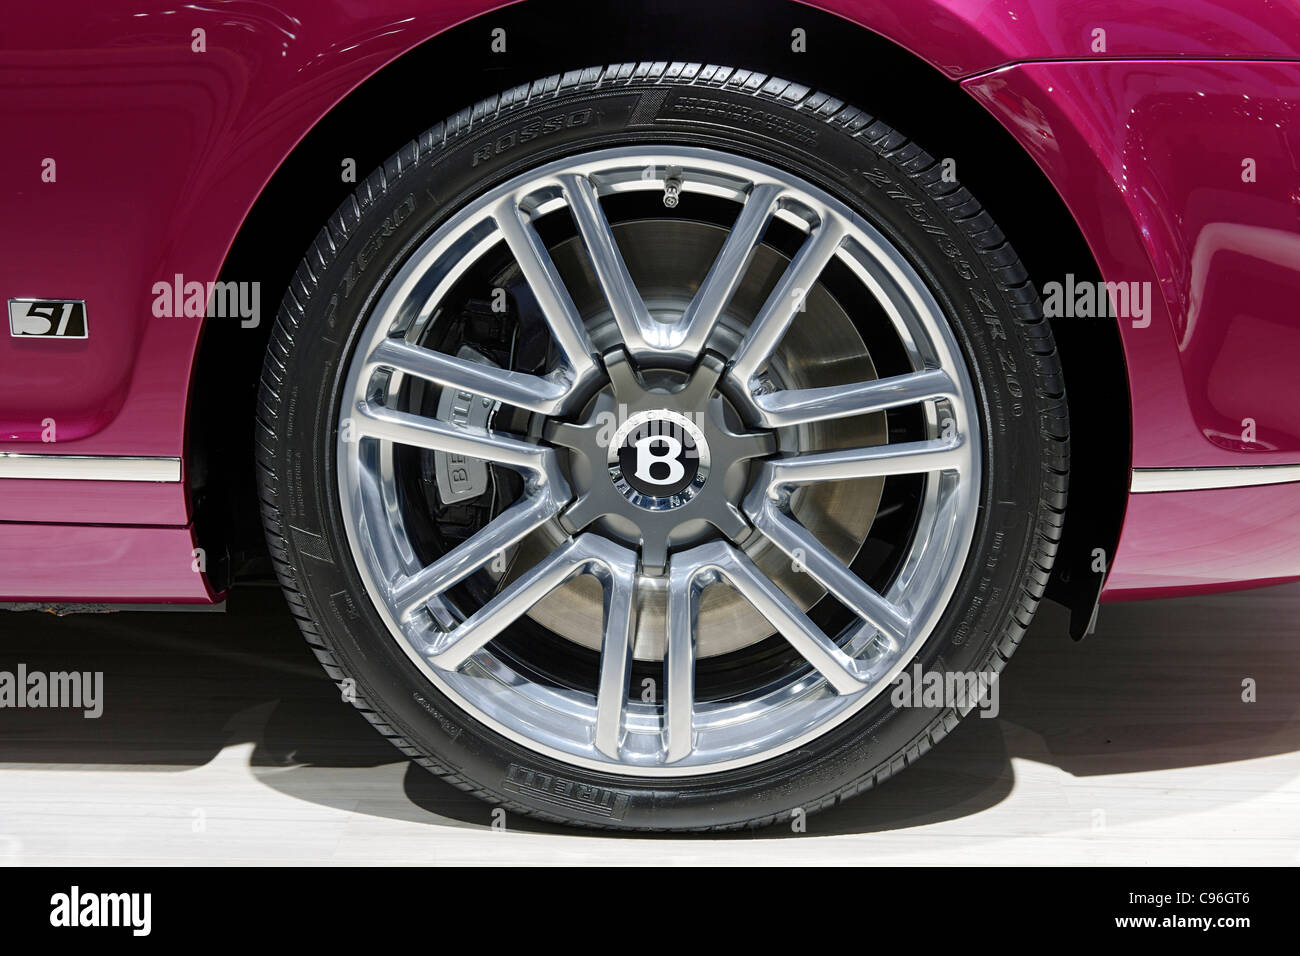 Bentley Continental GTC cabriolet, série 51, super voiture de sport, métallique rose Banque D'Images